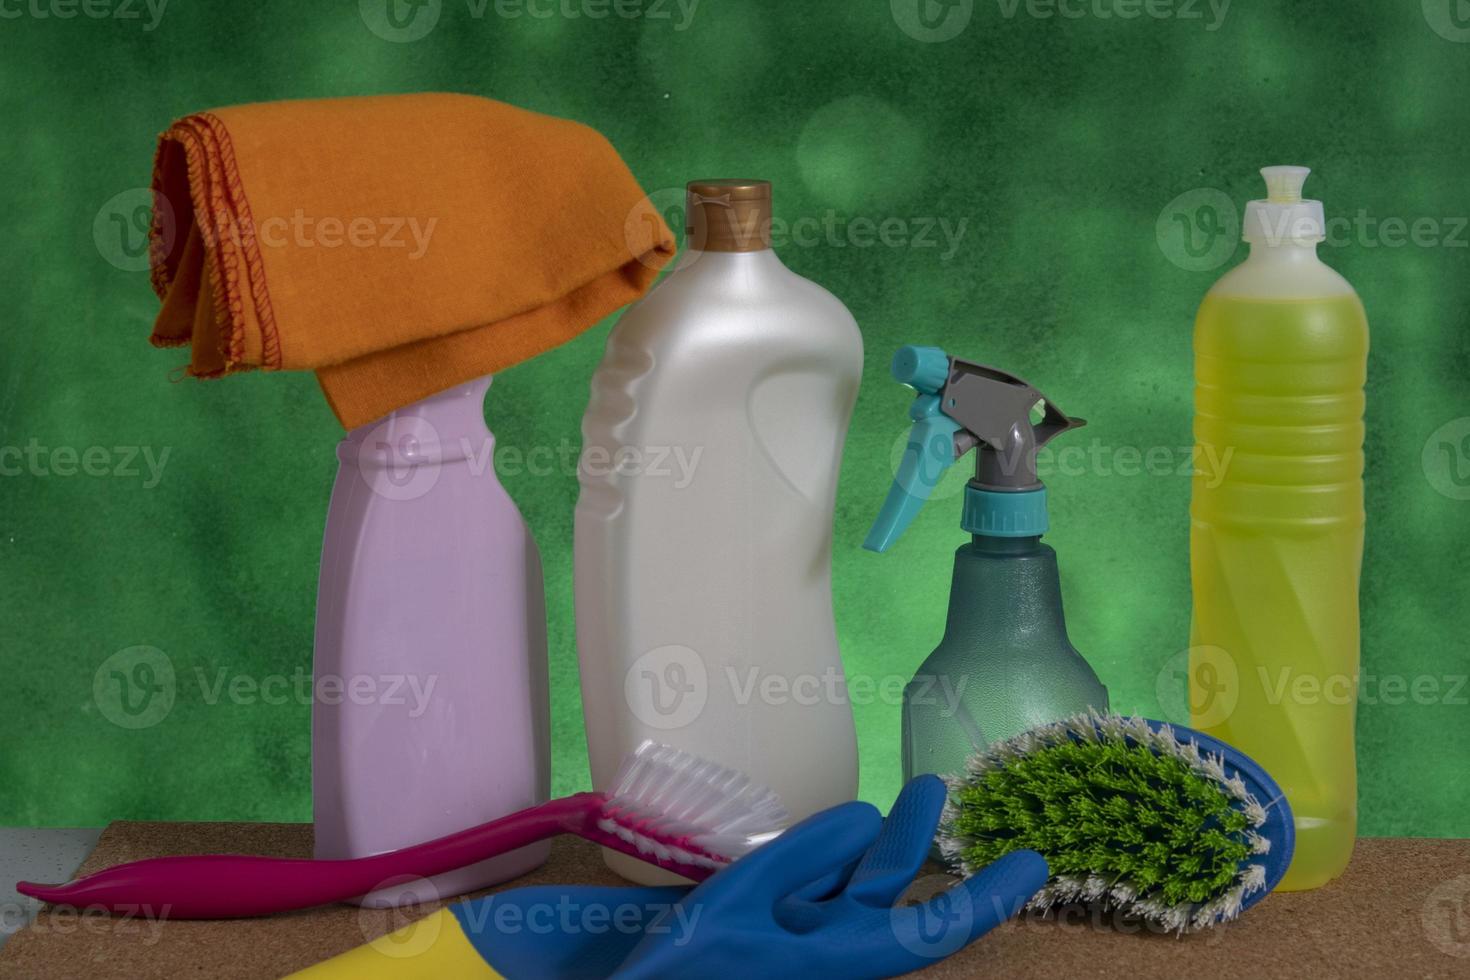 cesta com produtos de limpeza para uso de higiene doméstica foto